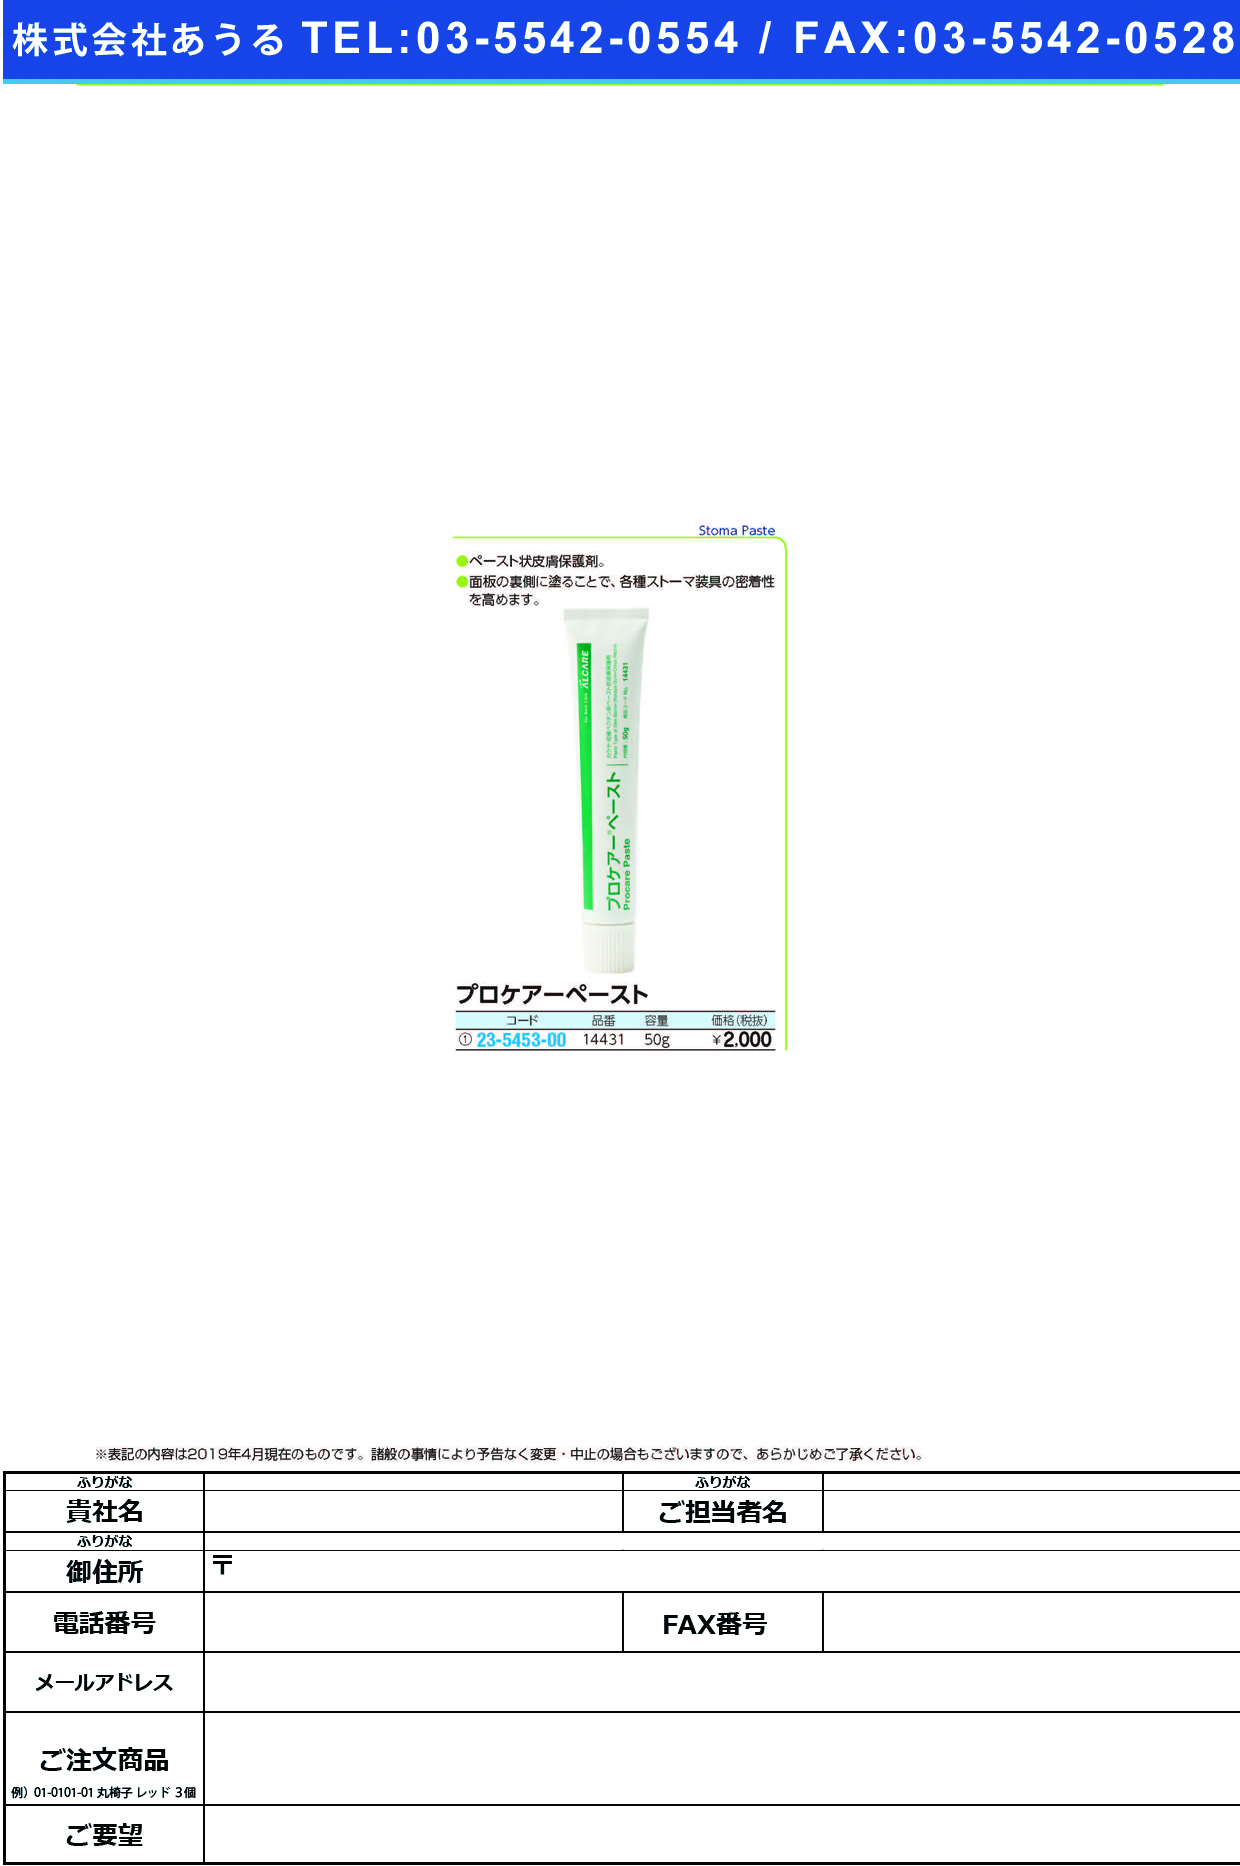 (23-5453-00)プロケアーペースト 14431(50G)1ﾎﾝｲﾘ ﾌﾟﾛｹｱｰﾍﾟｰｽﾄ(アルケア)【1箱単位】【2019年カタログ商品】